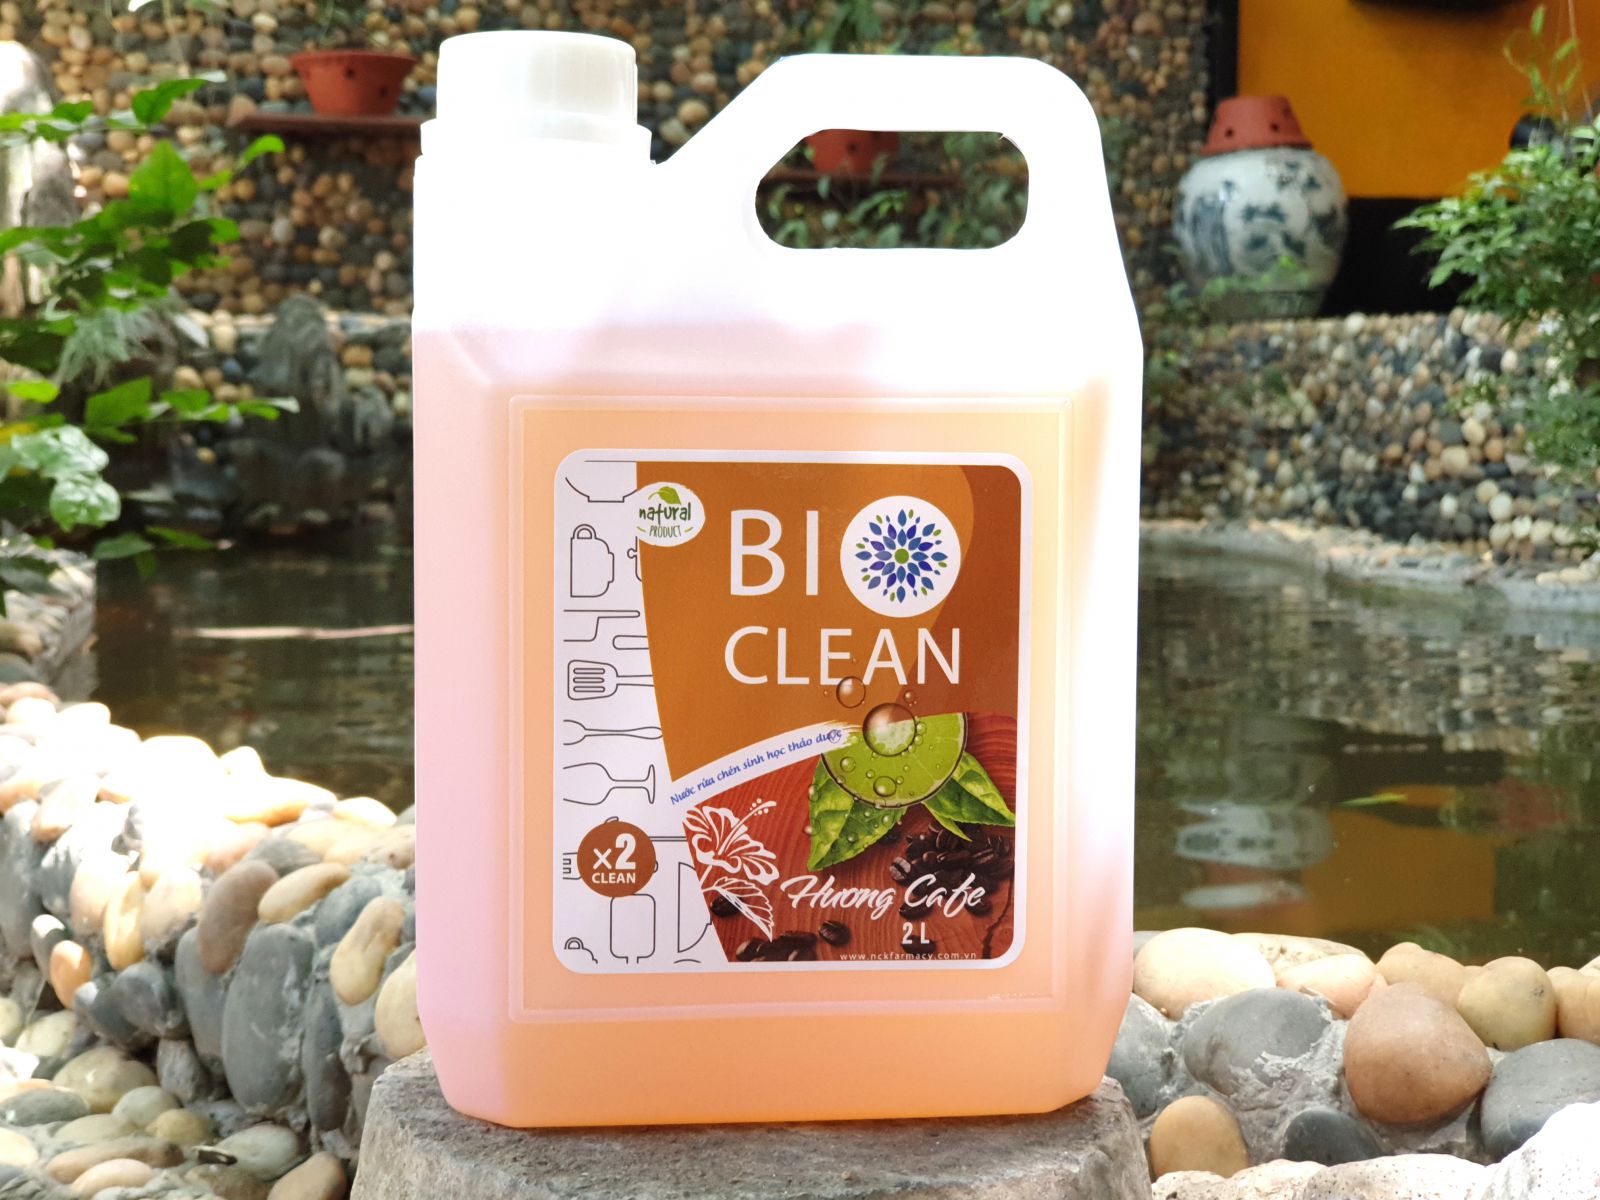 Nước rửa chén sinh học thảo dược BioClean X2, hương cà phê, can 2 lít